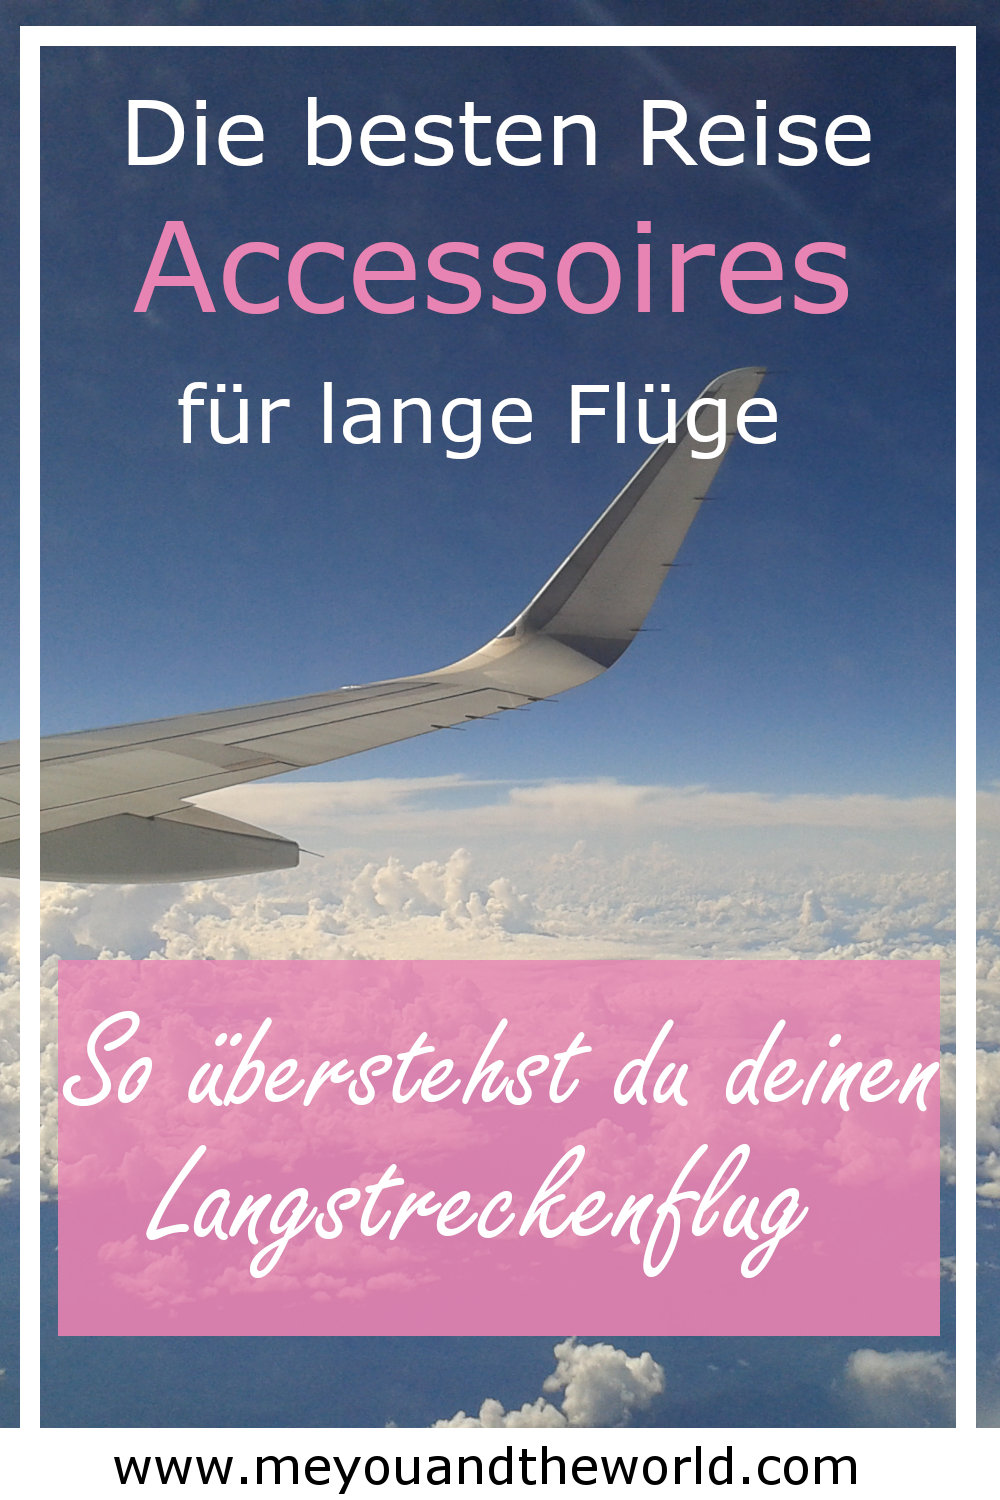 Die 23 besten Reise Accessoires für lange Flüge - Weltreise Blog  meyouandtheworld